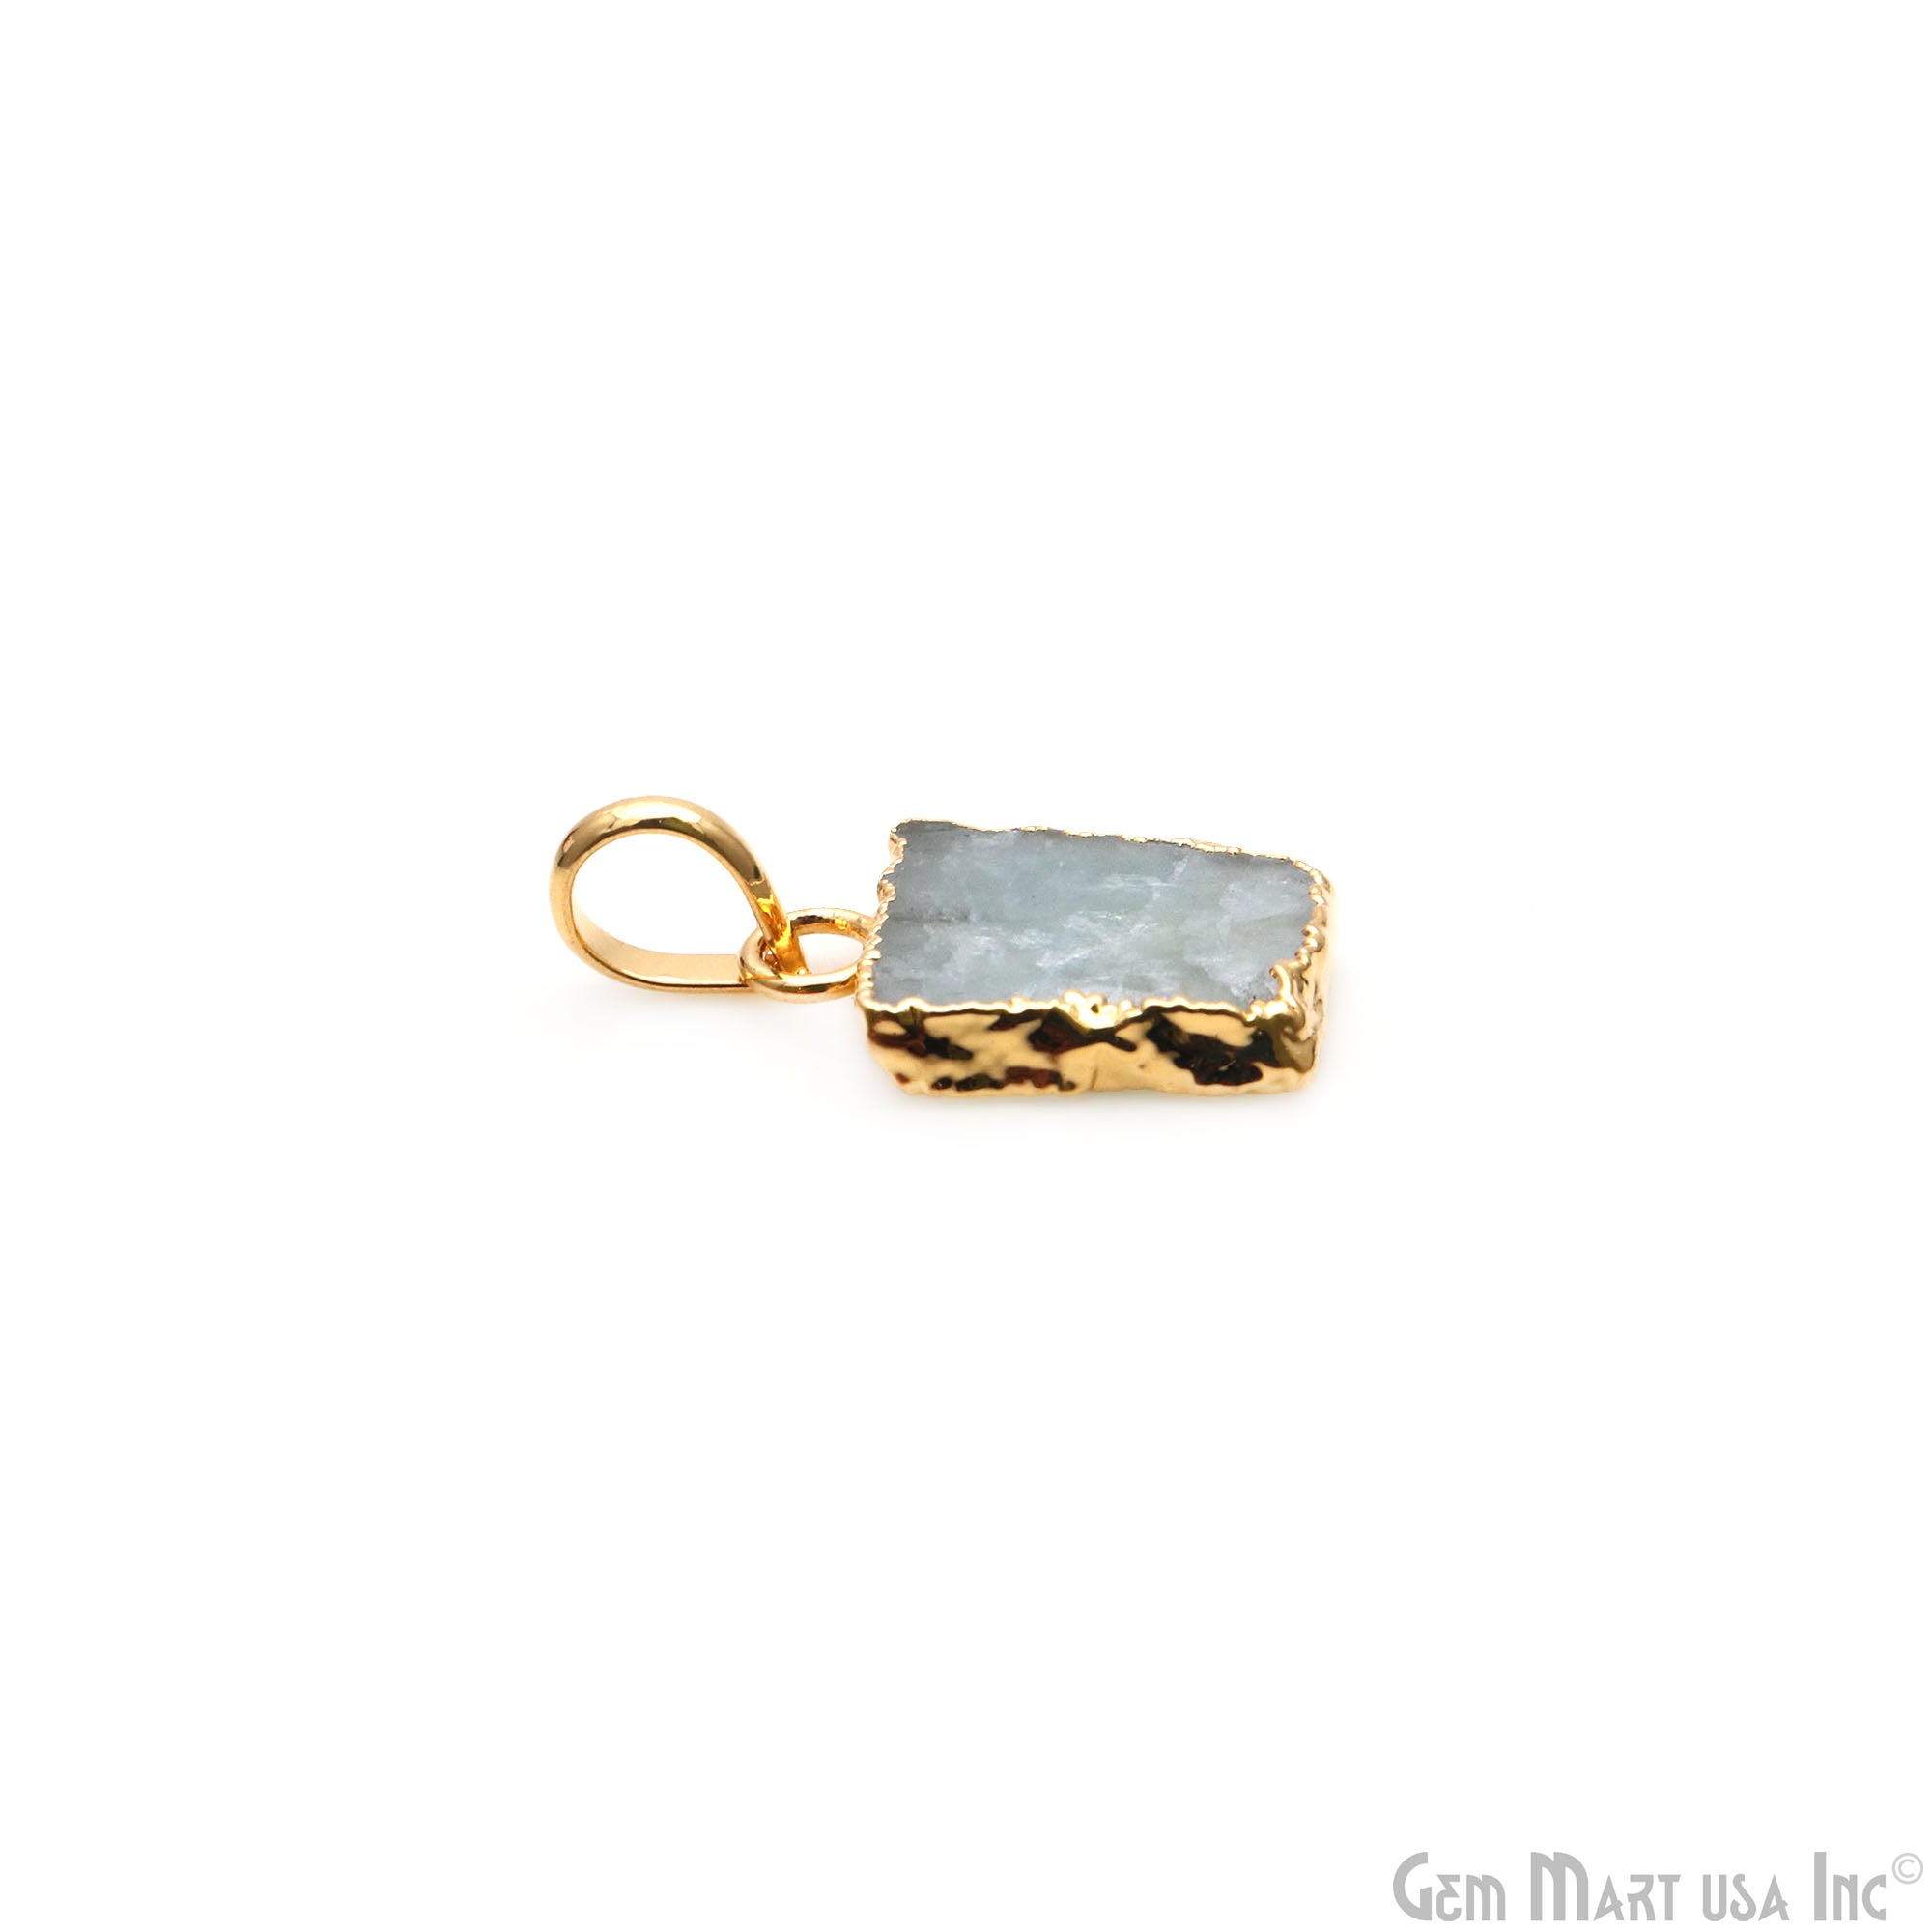 Aquamarine Free Form shape 18x13mm Gold Electroplated Gemstone Single Bail Pendant